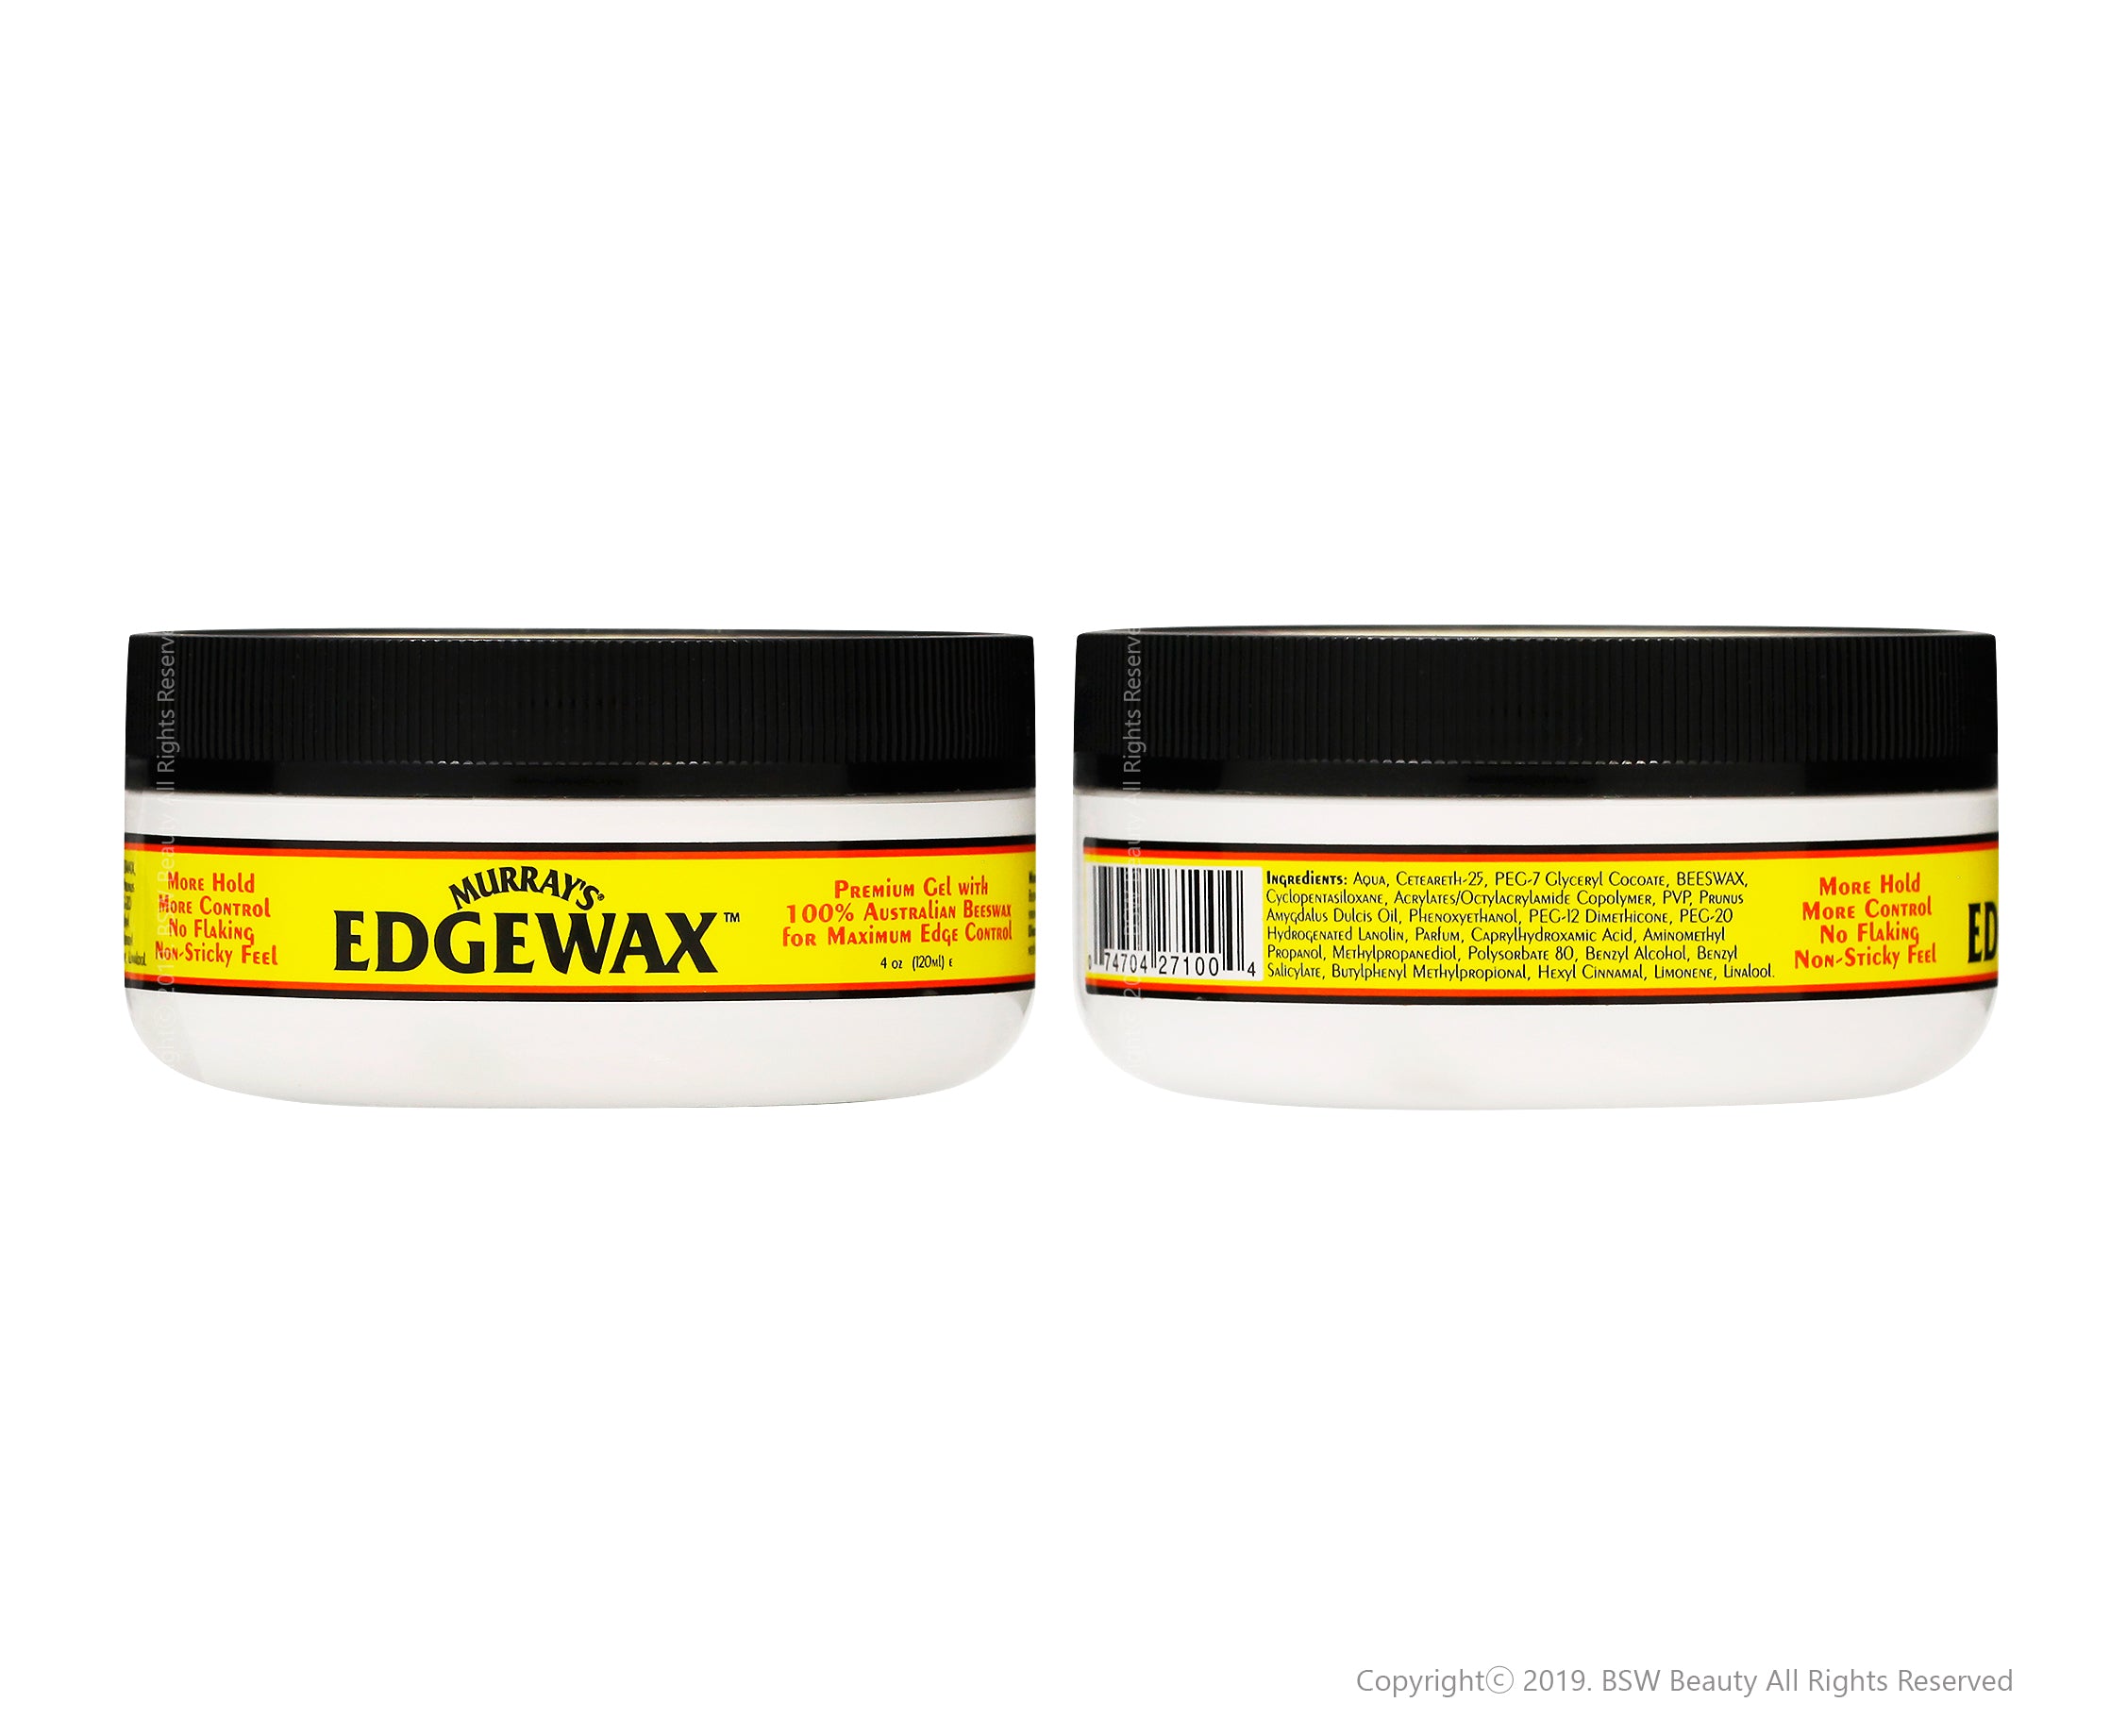 Murray's Edgewax Gel, 4 oz (120 mL) Ingredients and Reviews